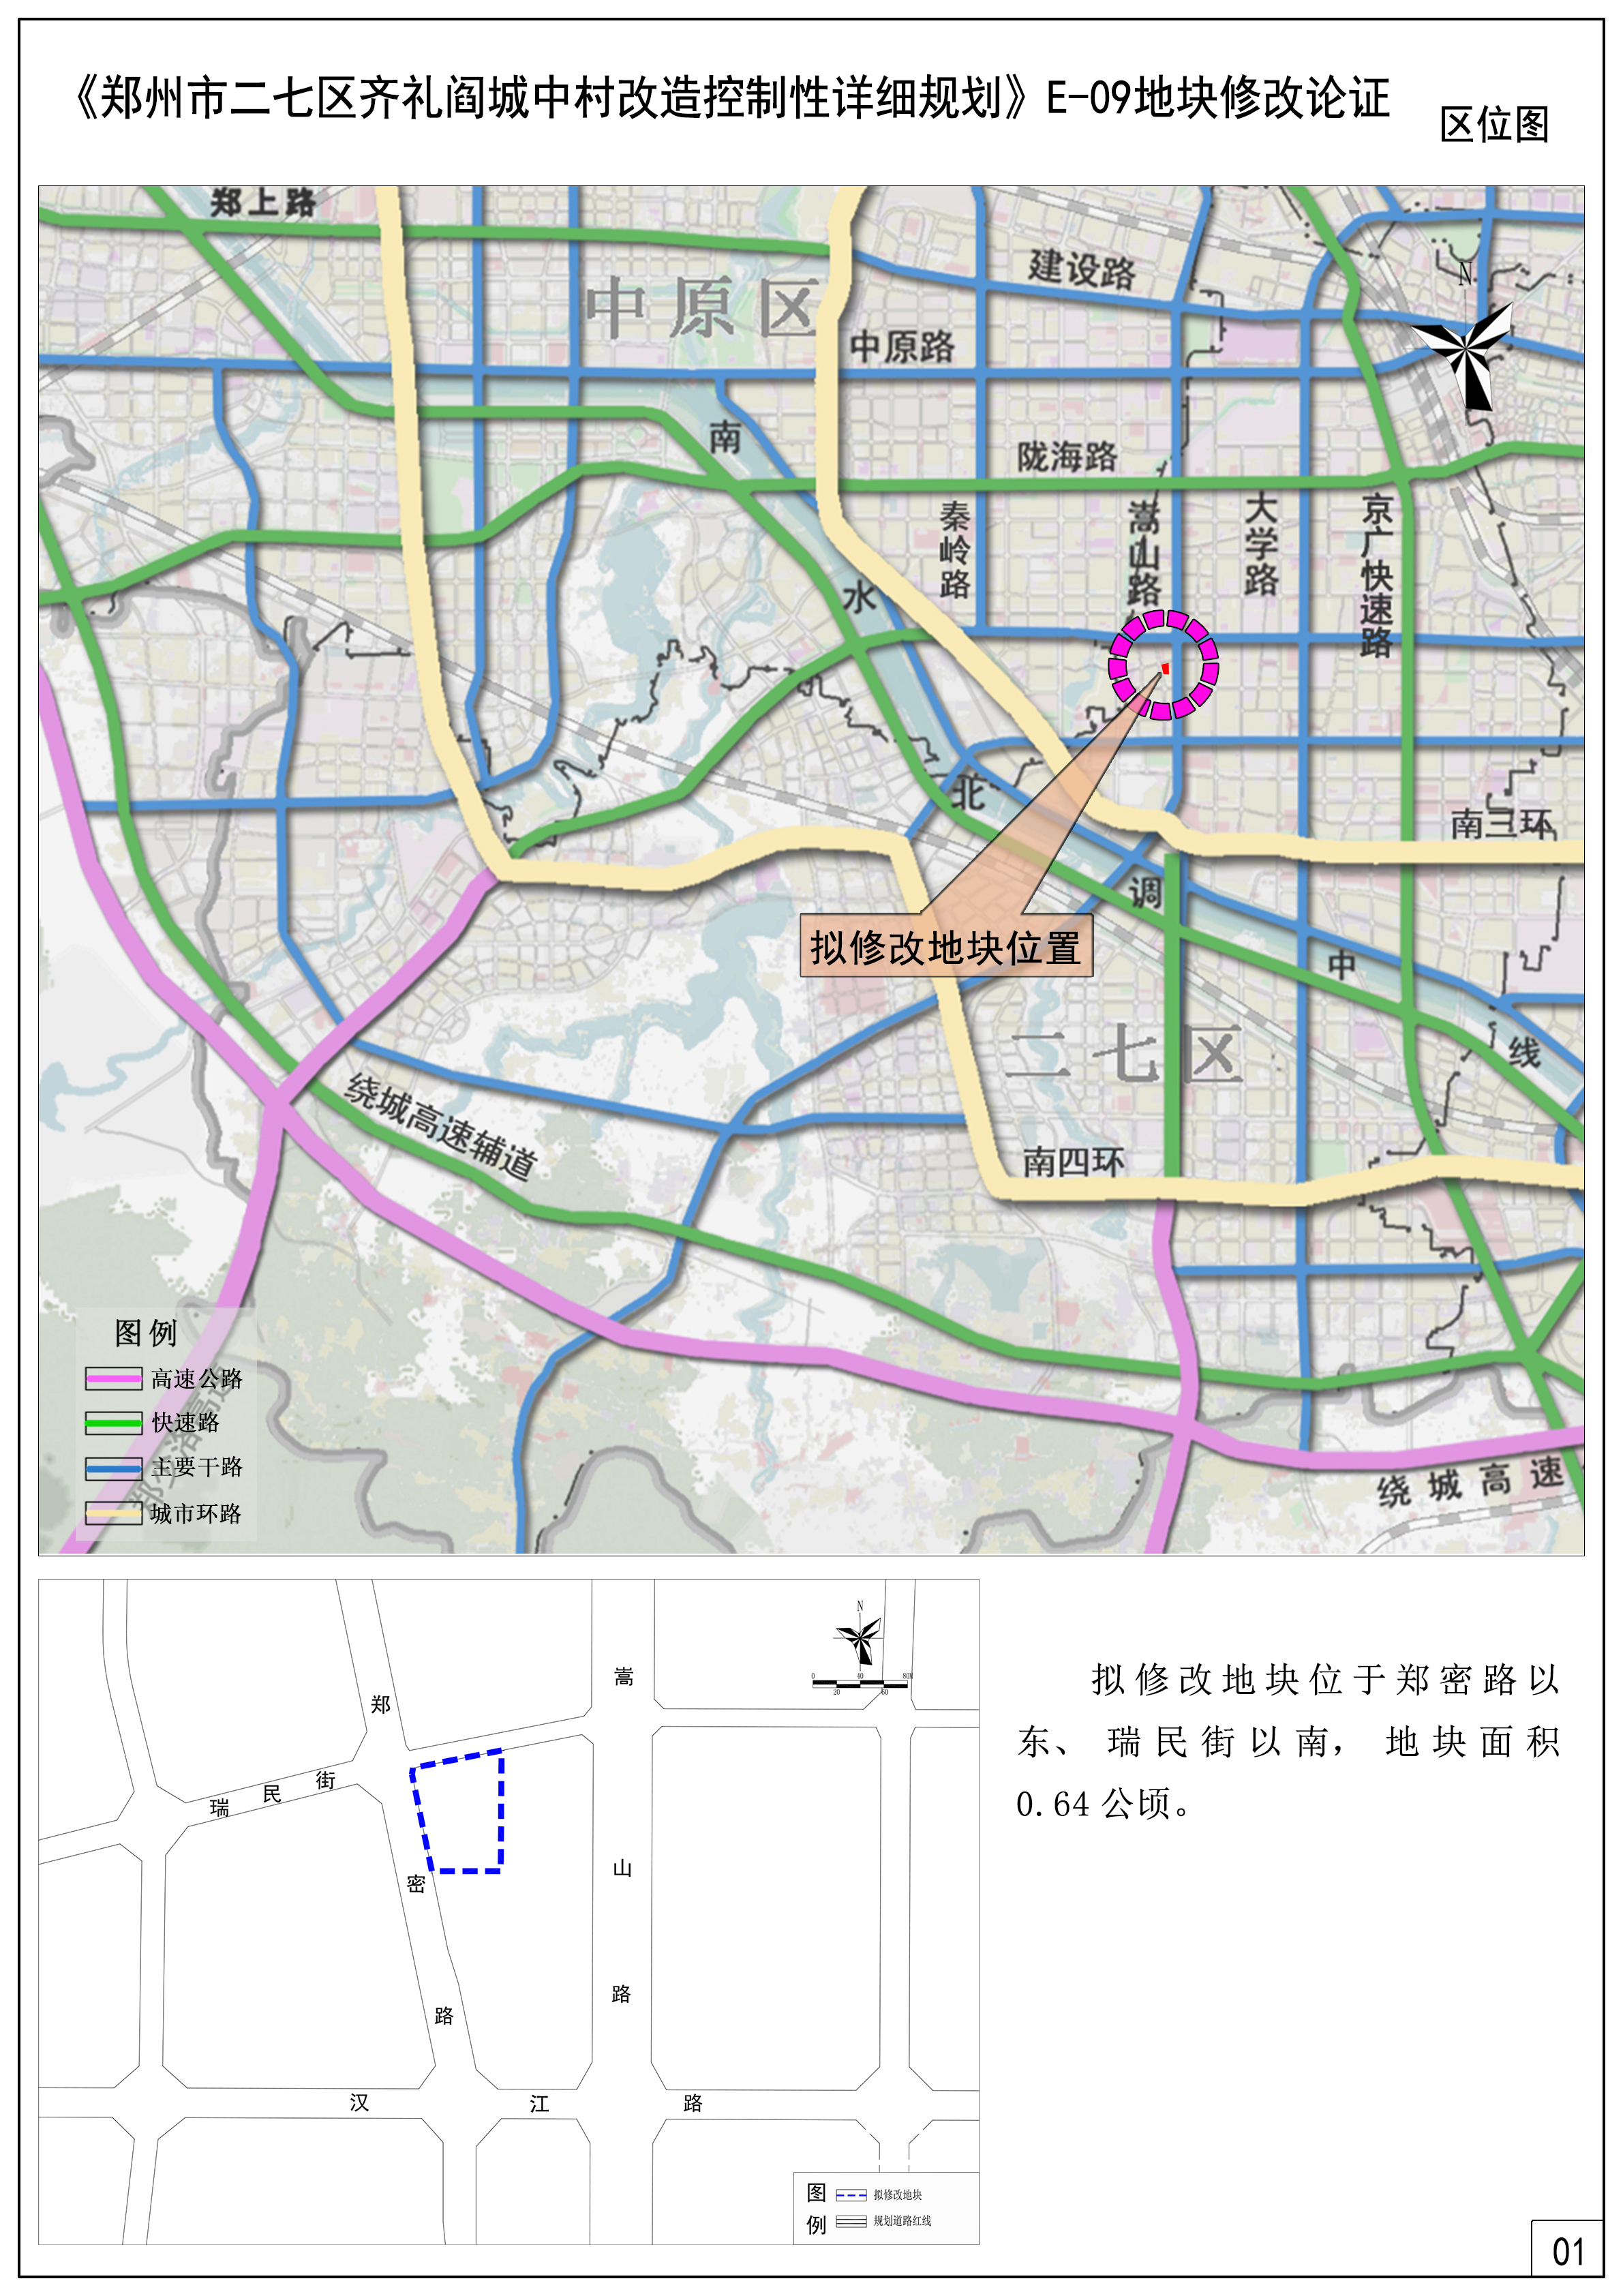 《郑州市二七区齐礼阎城中村改造控制性详细规划》E-09地块修改论证报告